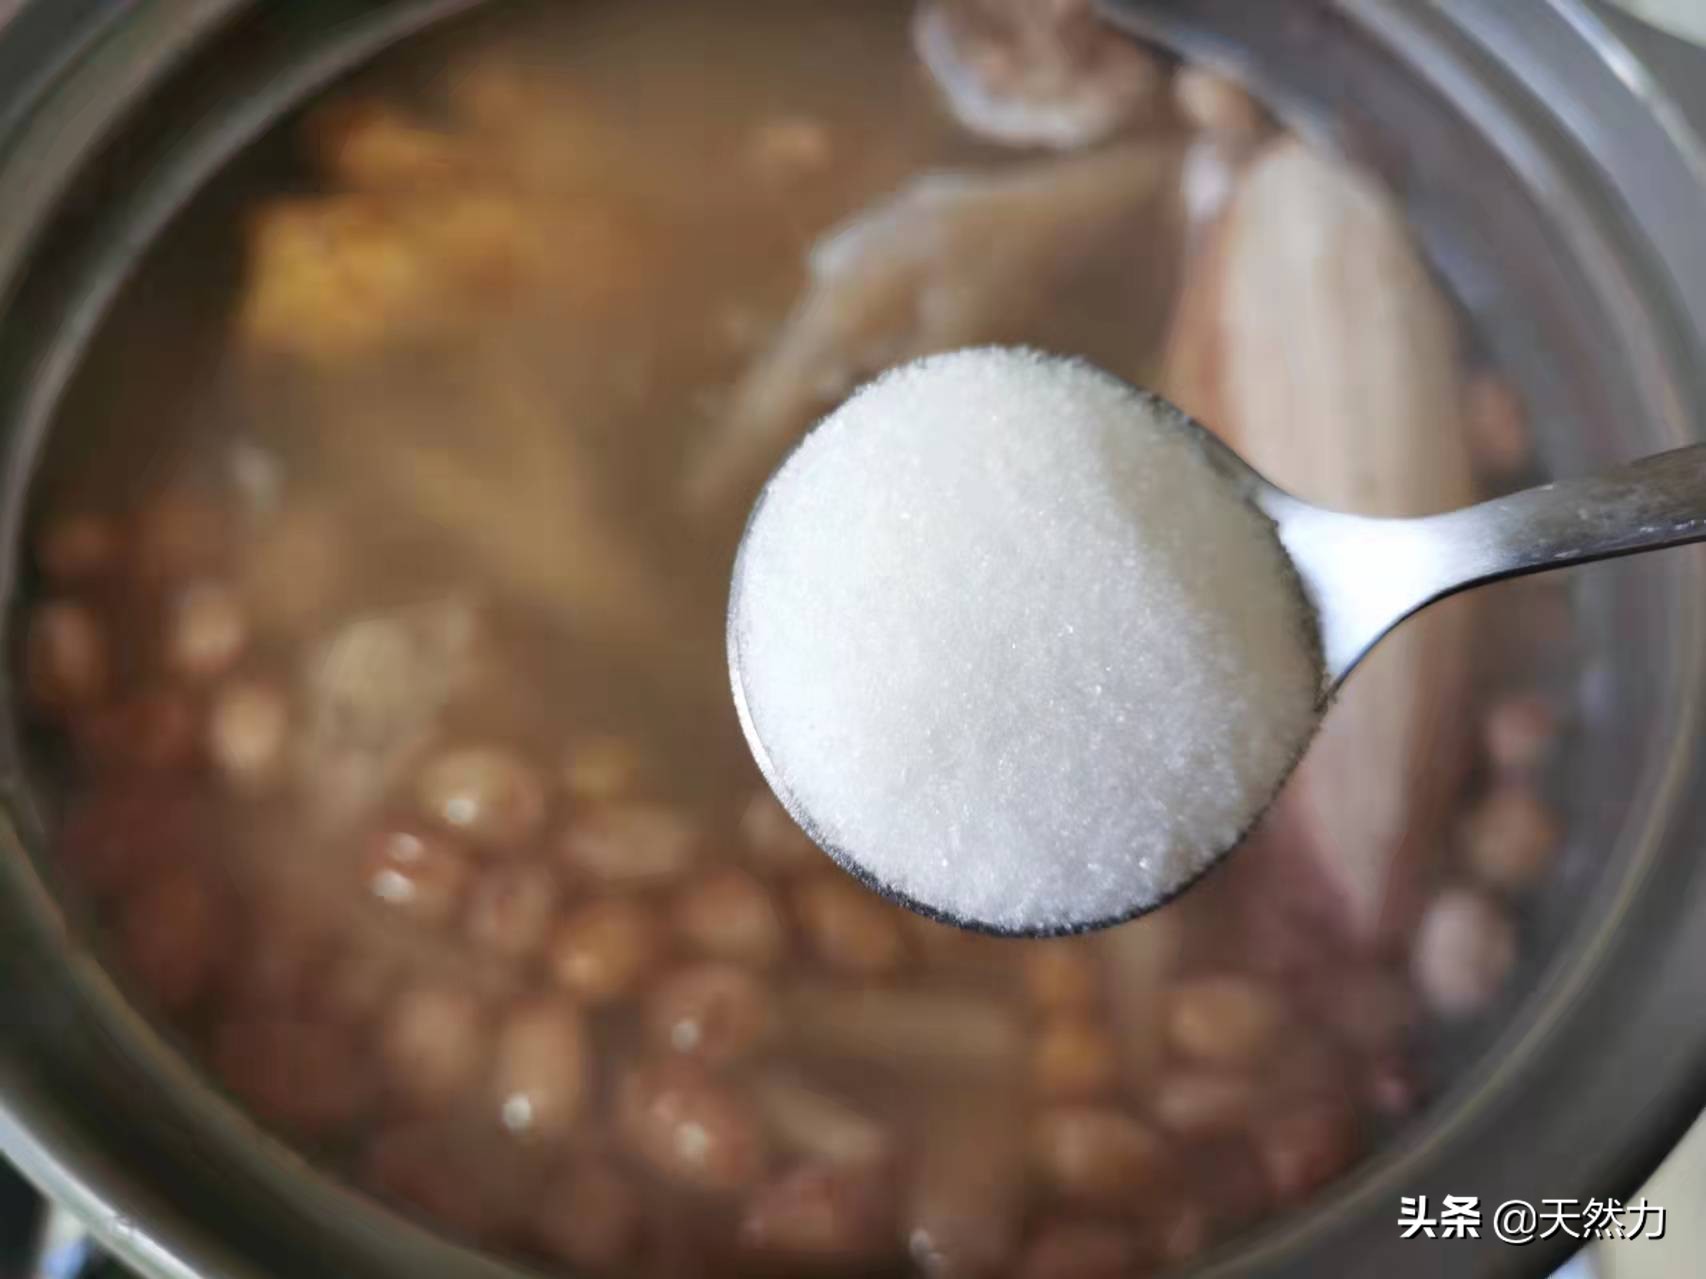 广东家常老火靓汤之花生排骨墨鱼汤，做法简单，适合美女滋补的汤